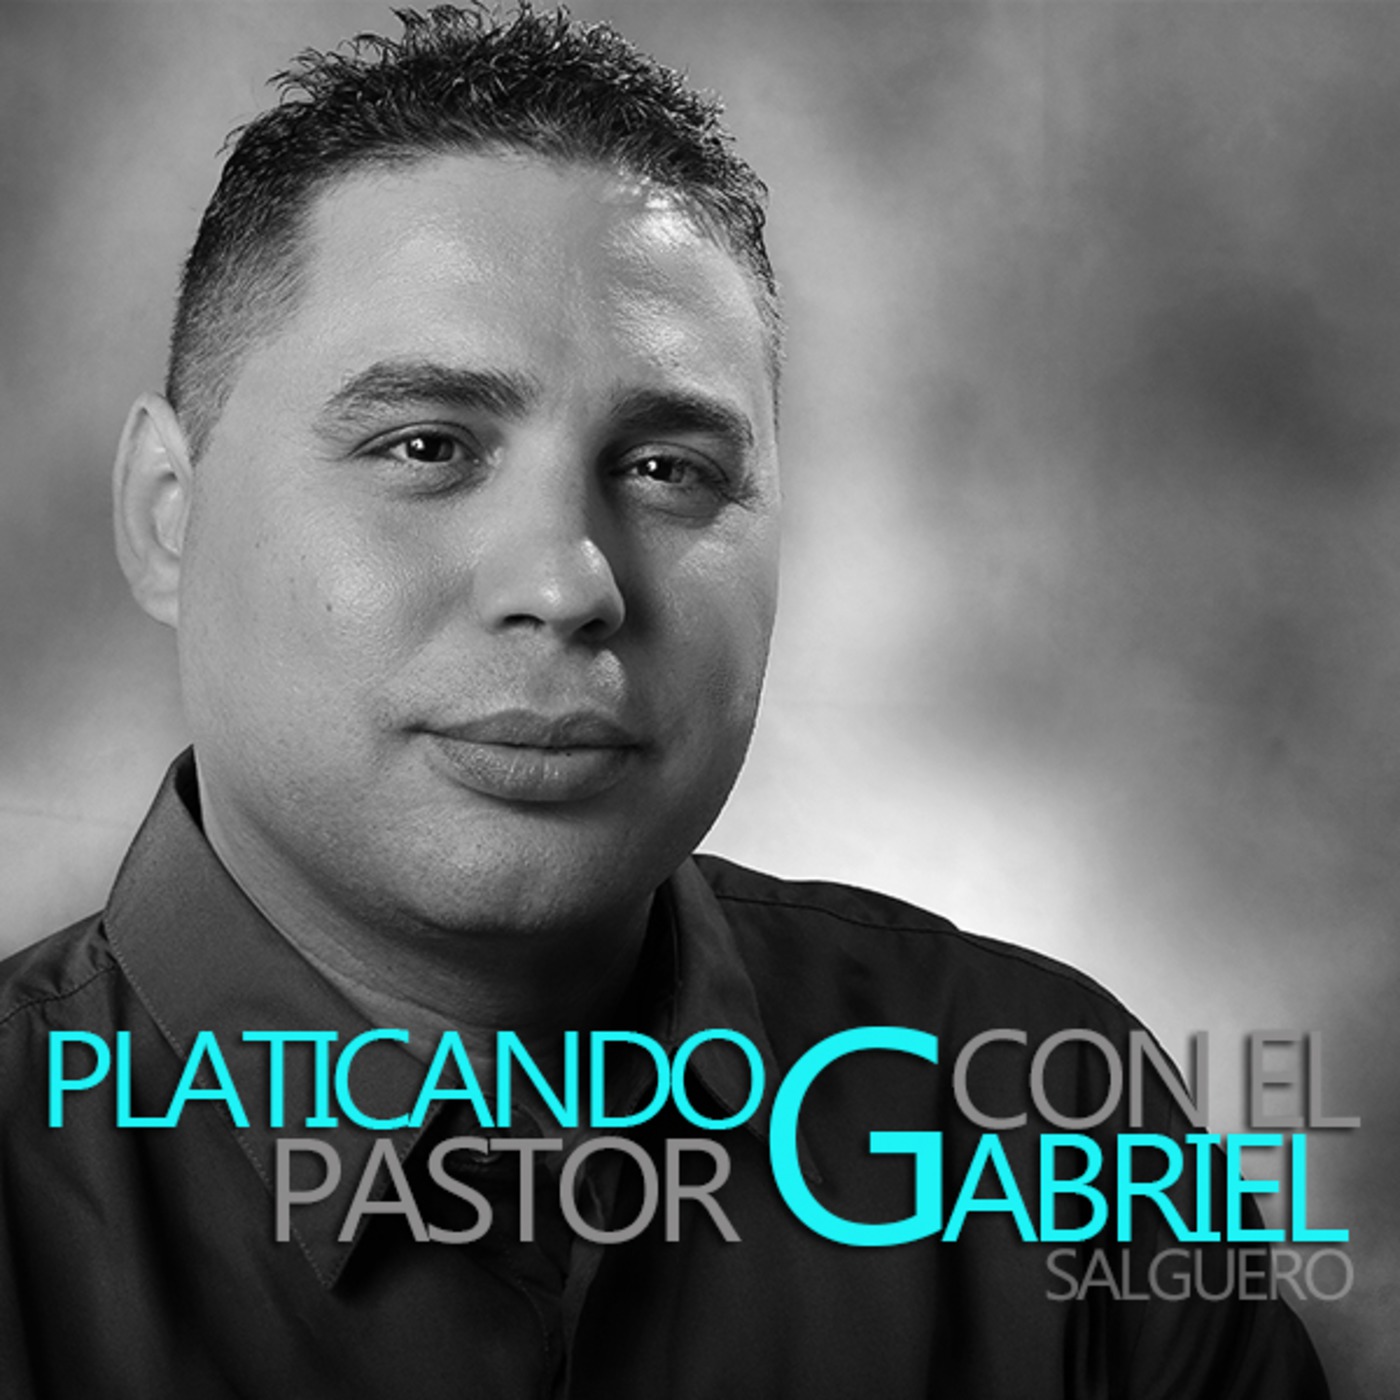 Recalibrate-Platicando con el Pastor Gabriel Salguero-014S